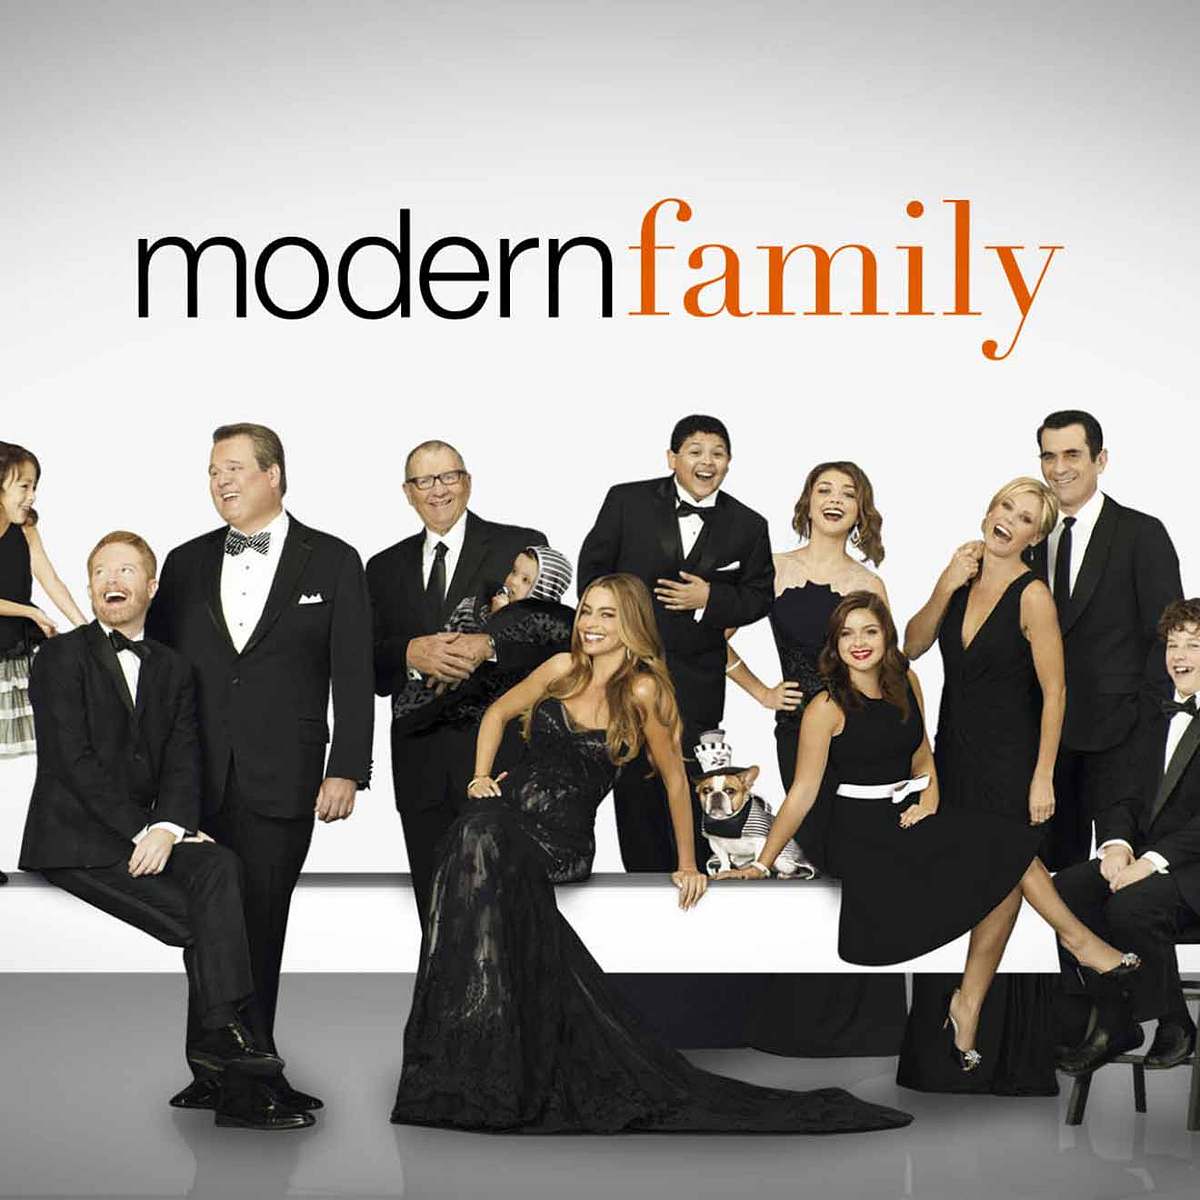 Lustige Serien zum Lachen: Das sind die beliebtesten Comedy-Shows Modern Family